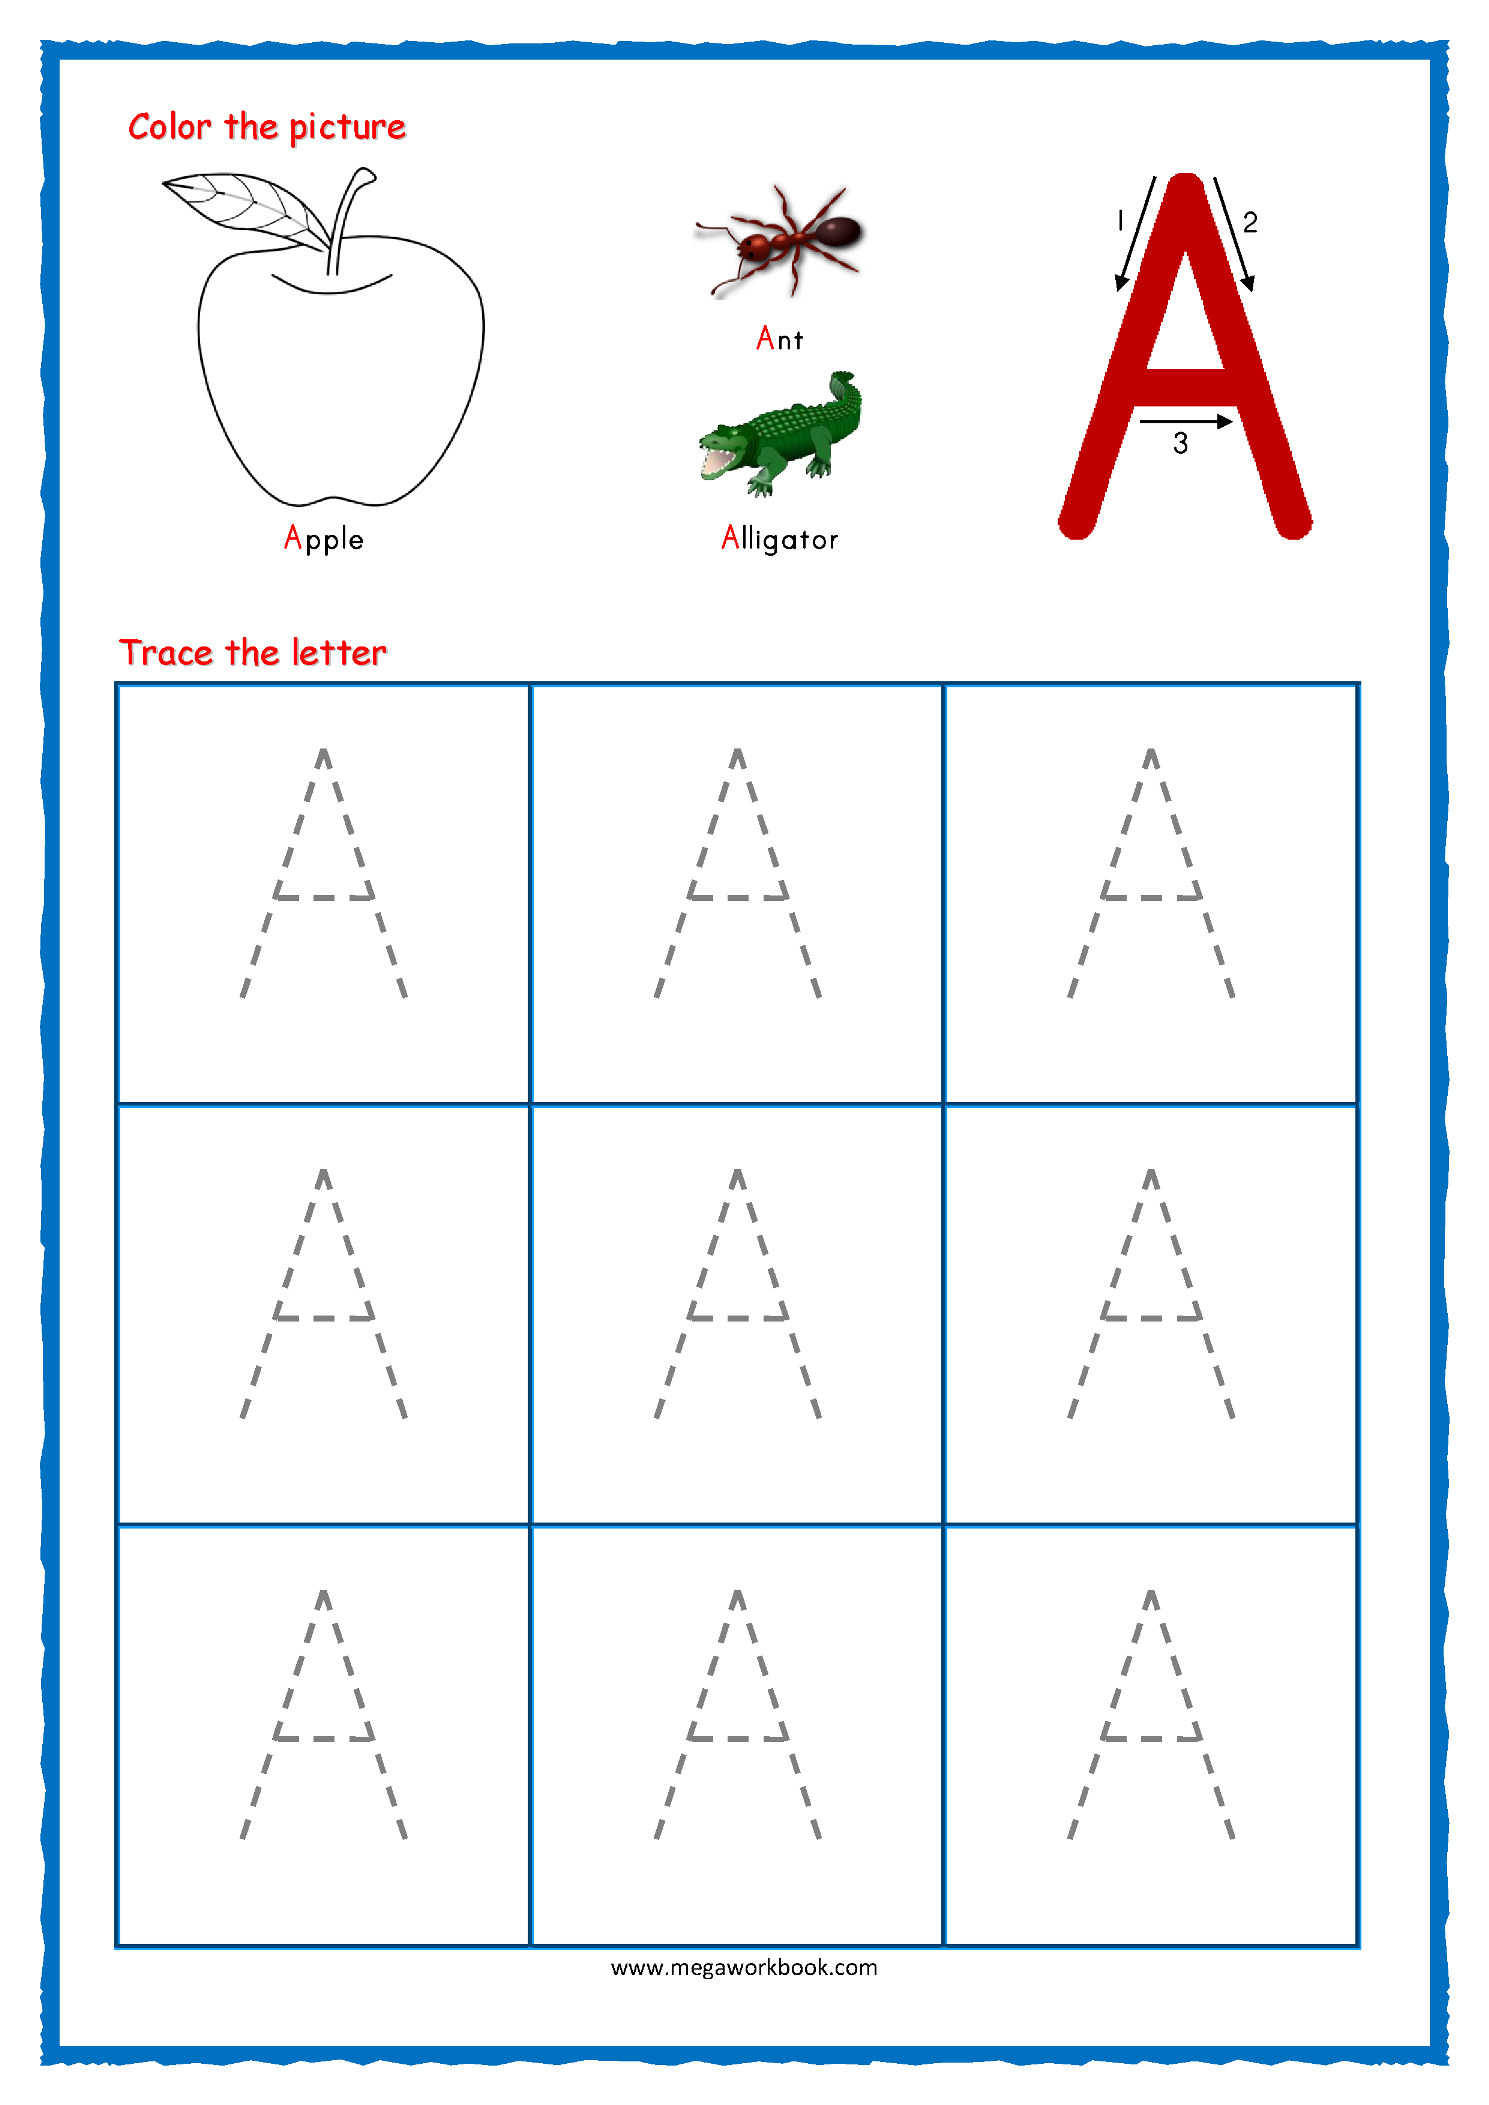 Worksheet ~ Worksheet Stunning Free Alphabet Tracingksheets with Alphabet Tracing Worksheets Pdf Download